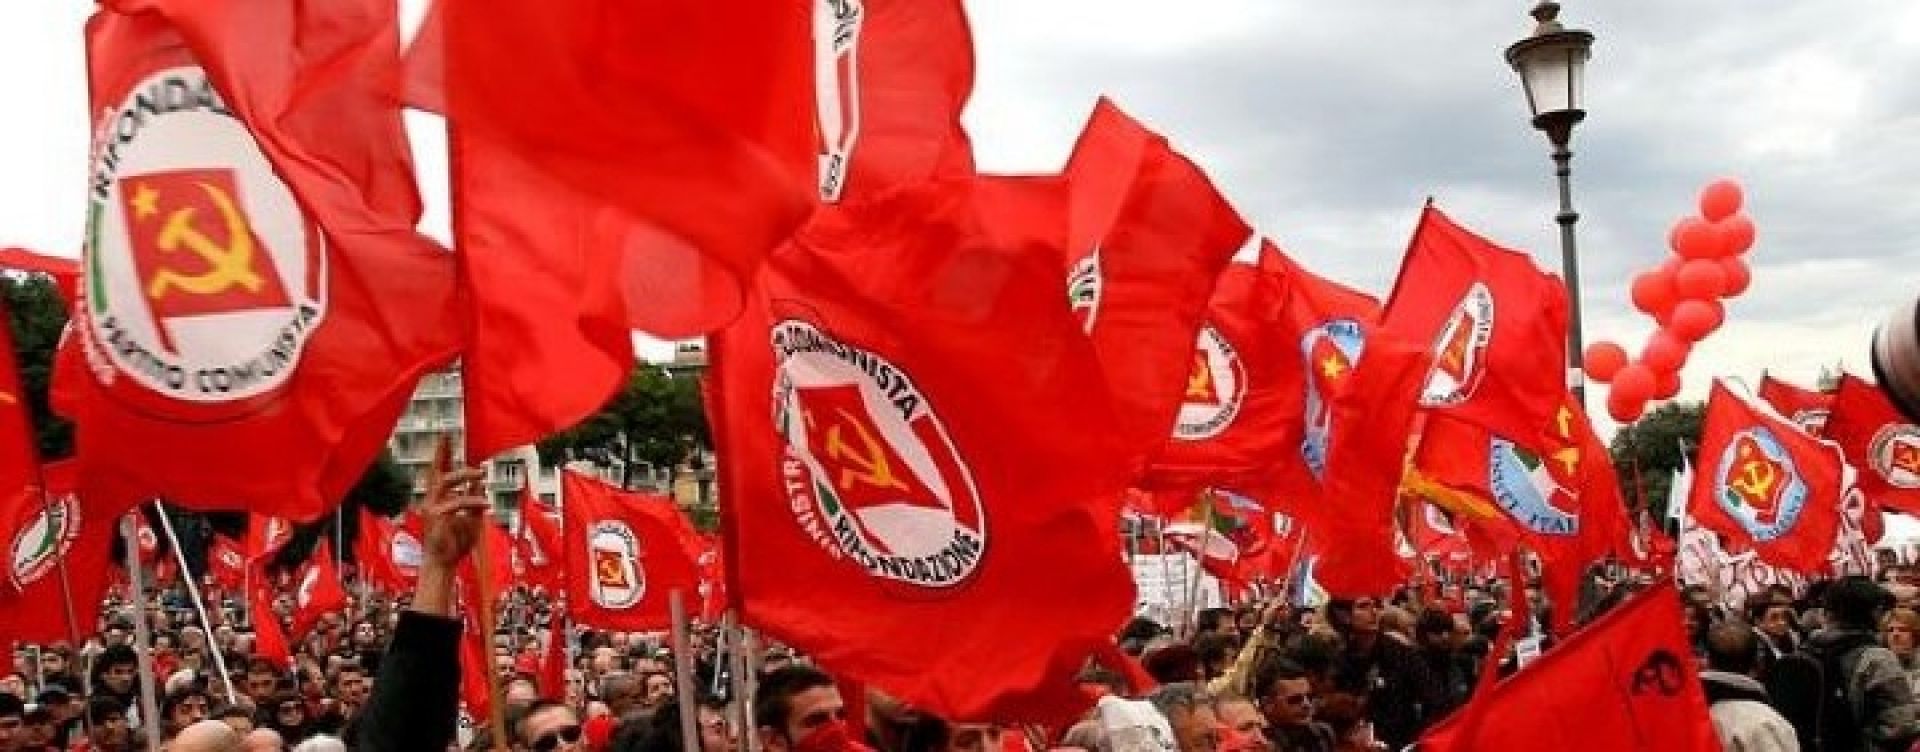 Fronte antiliberista e ruolo anticapitalista dei comunisti